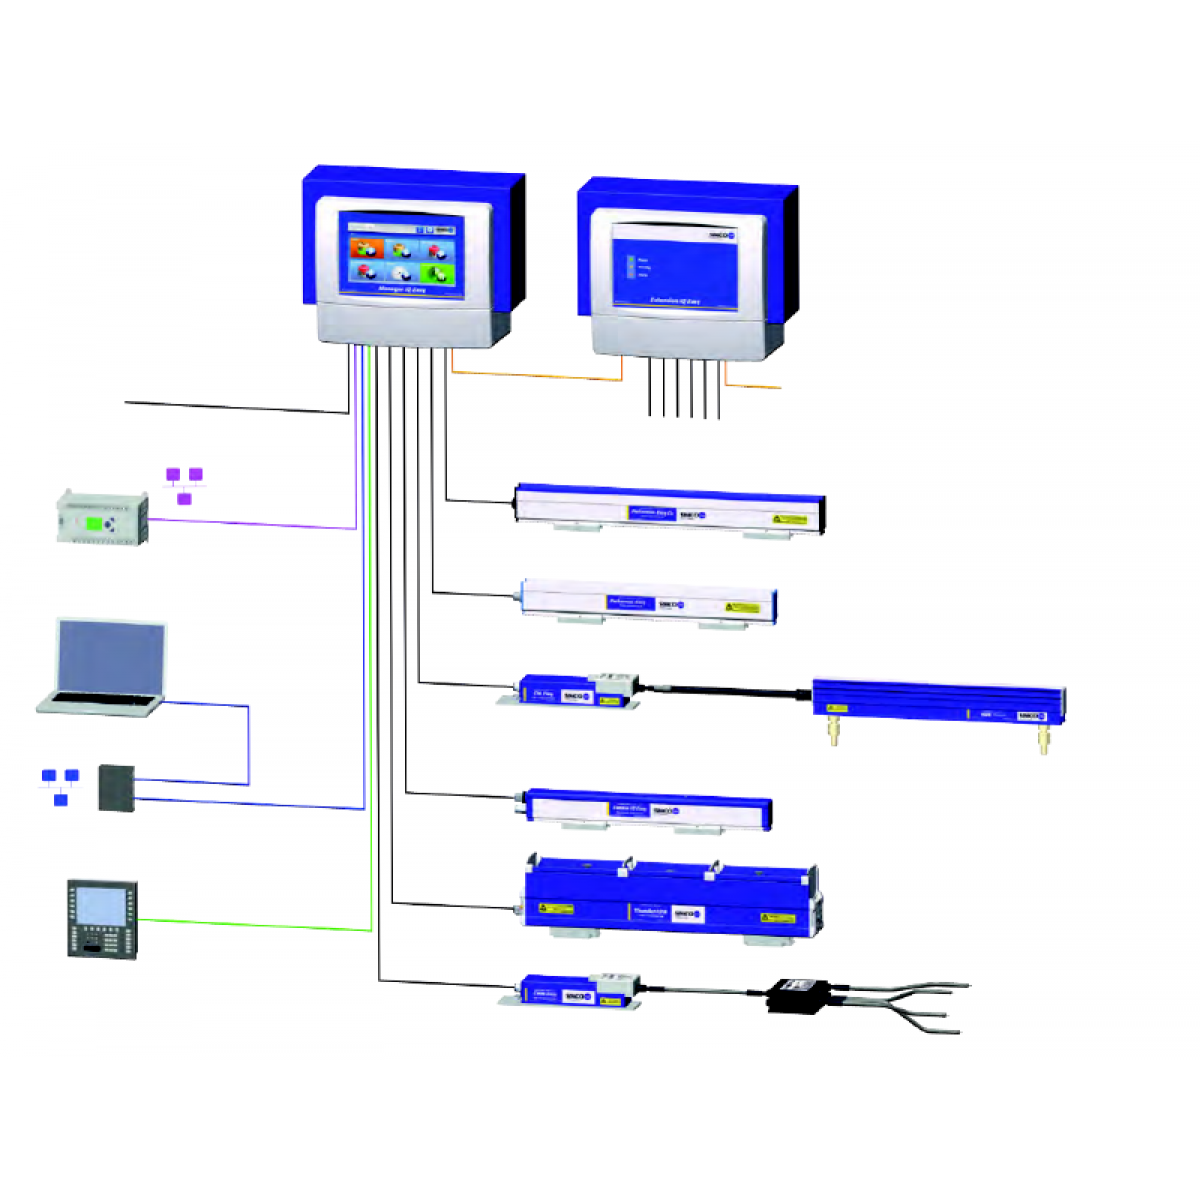 IQ Plattform - Steuerung und Überwachung von Ionisatoren im Fertigungsprozess